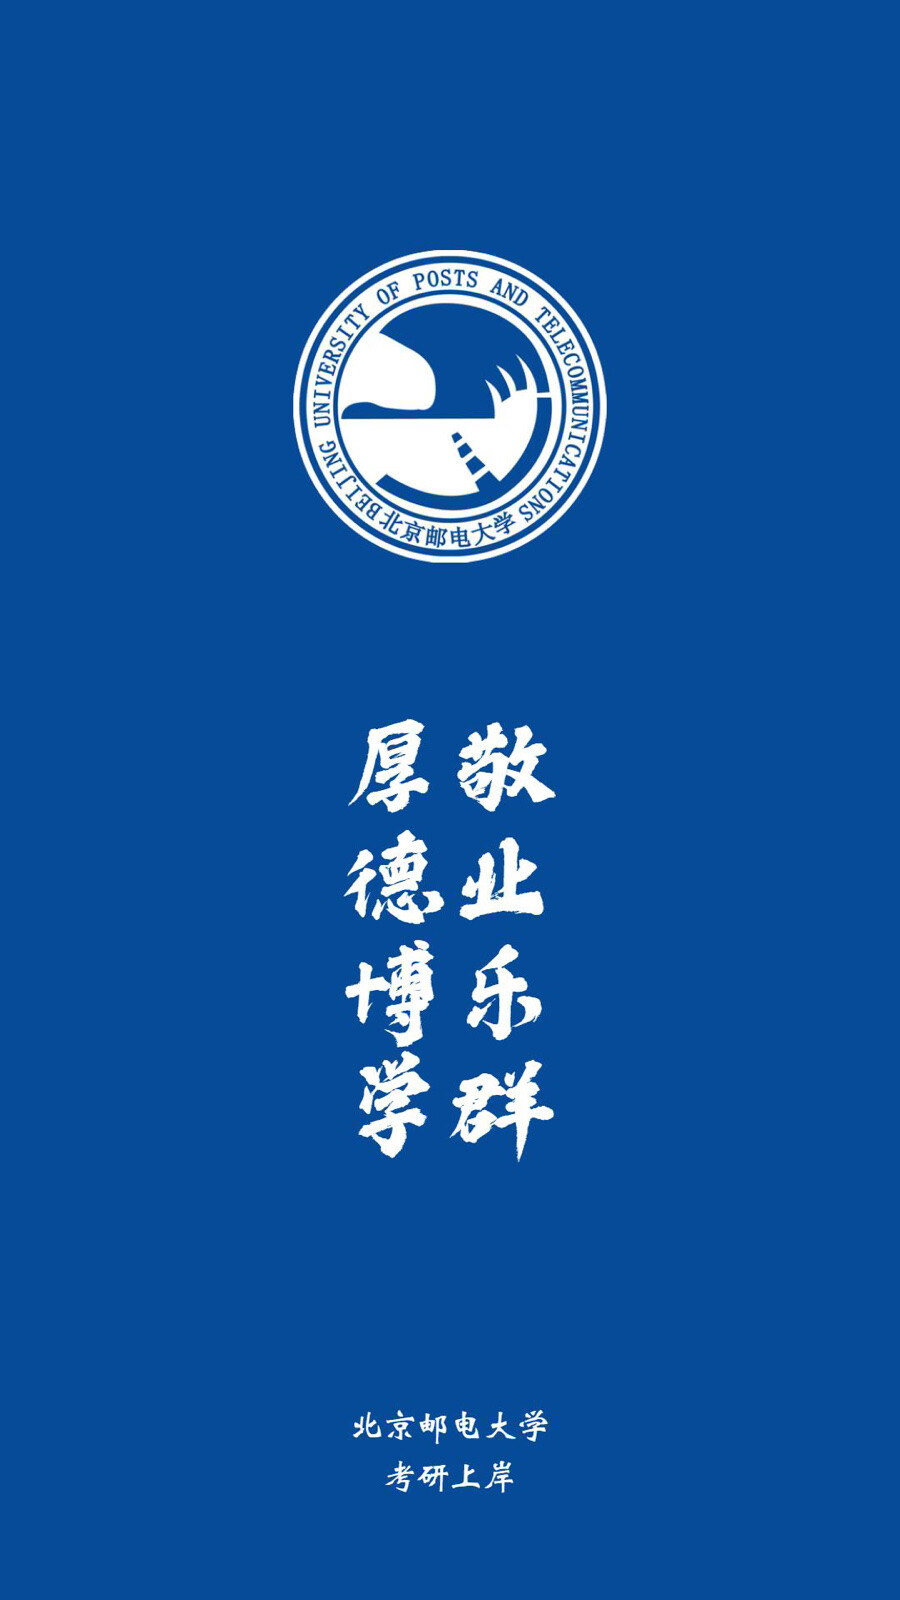 北京邮电大学手机壁纸图片